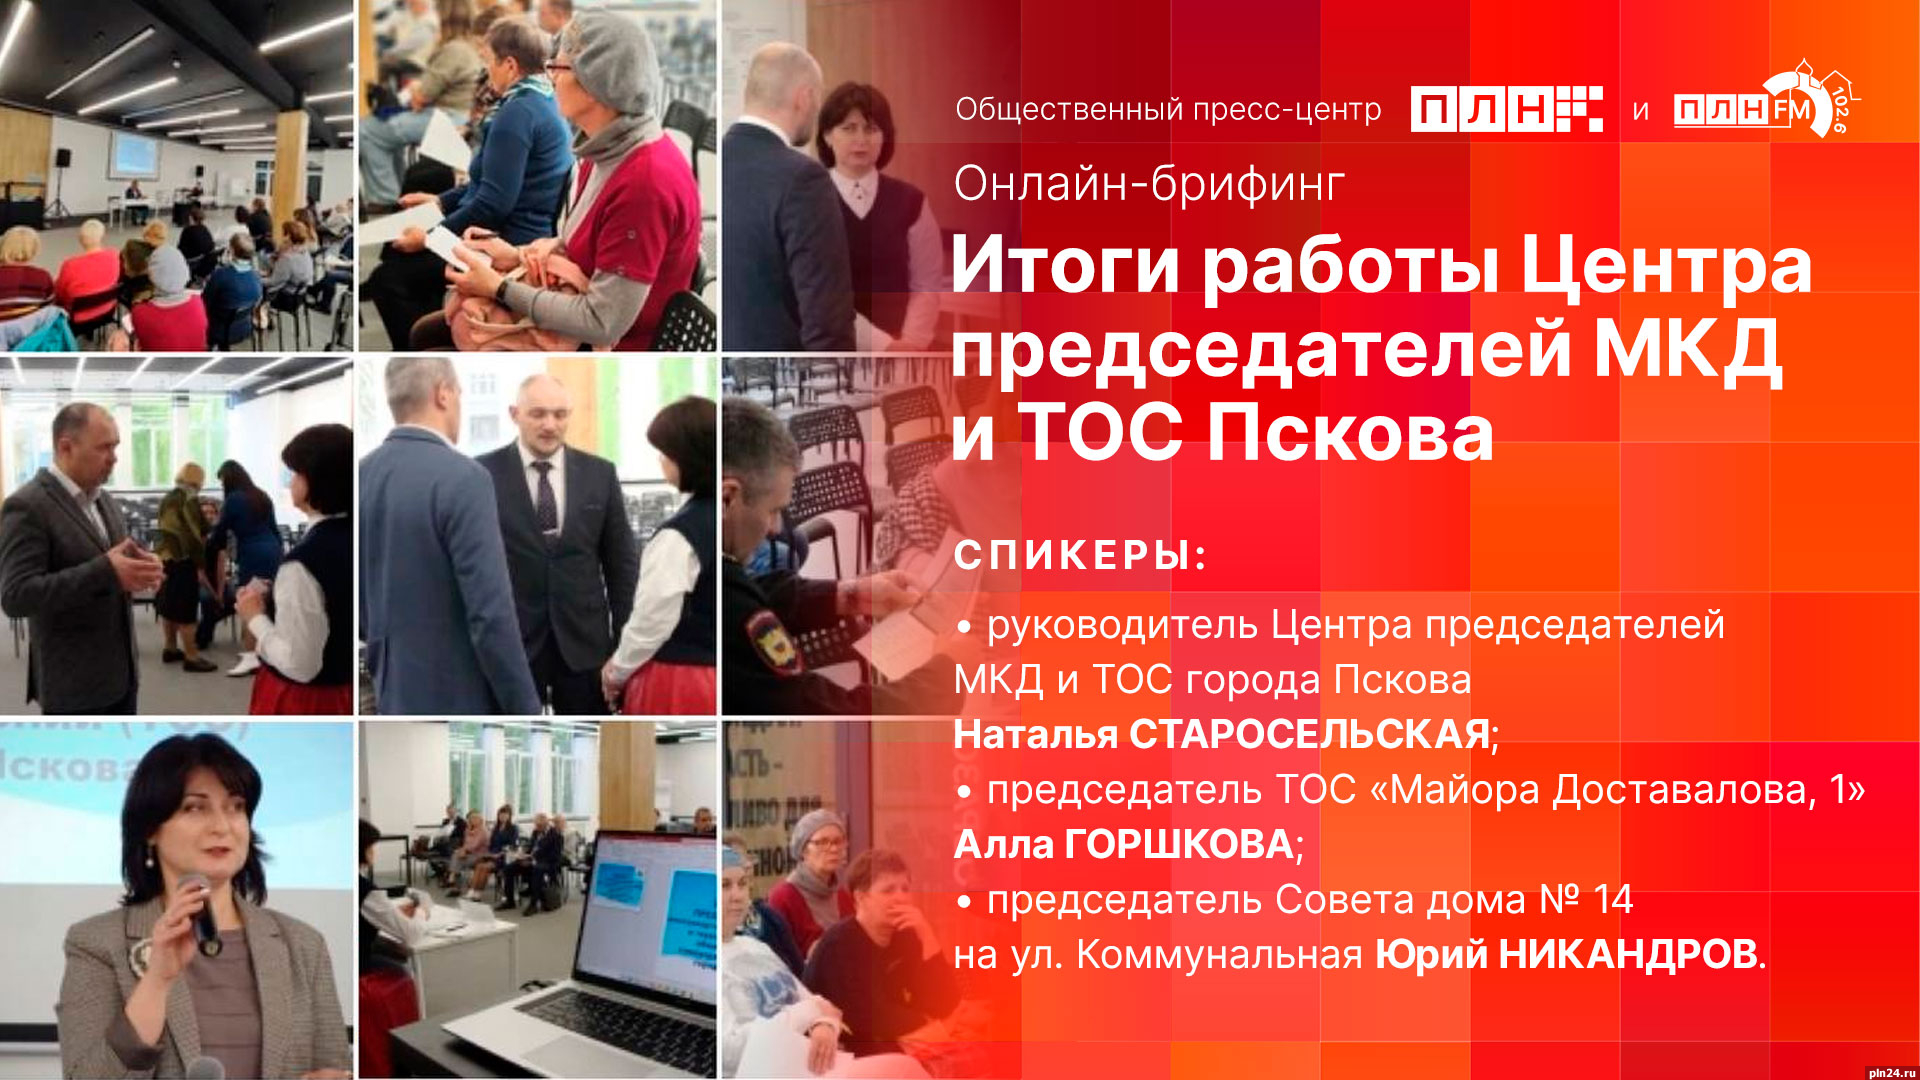 Начинается видеотрансляция онлайн-брифинга об итогах работы Центра председателей МКД и ТОС города Пскова